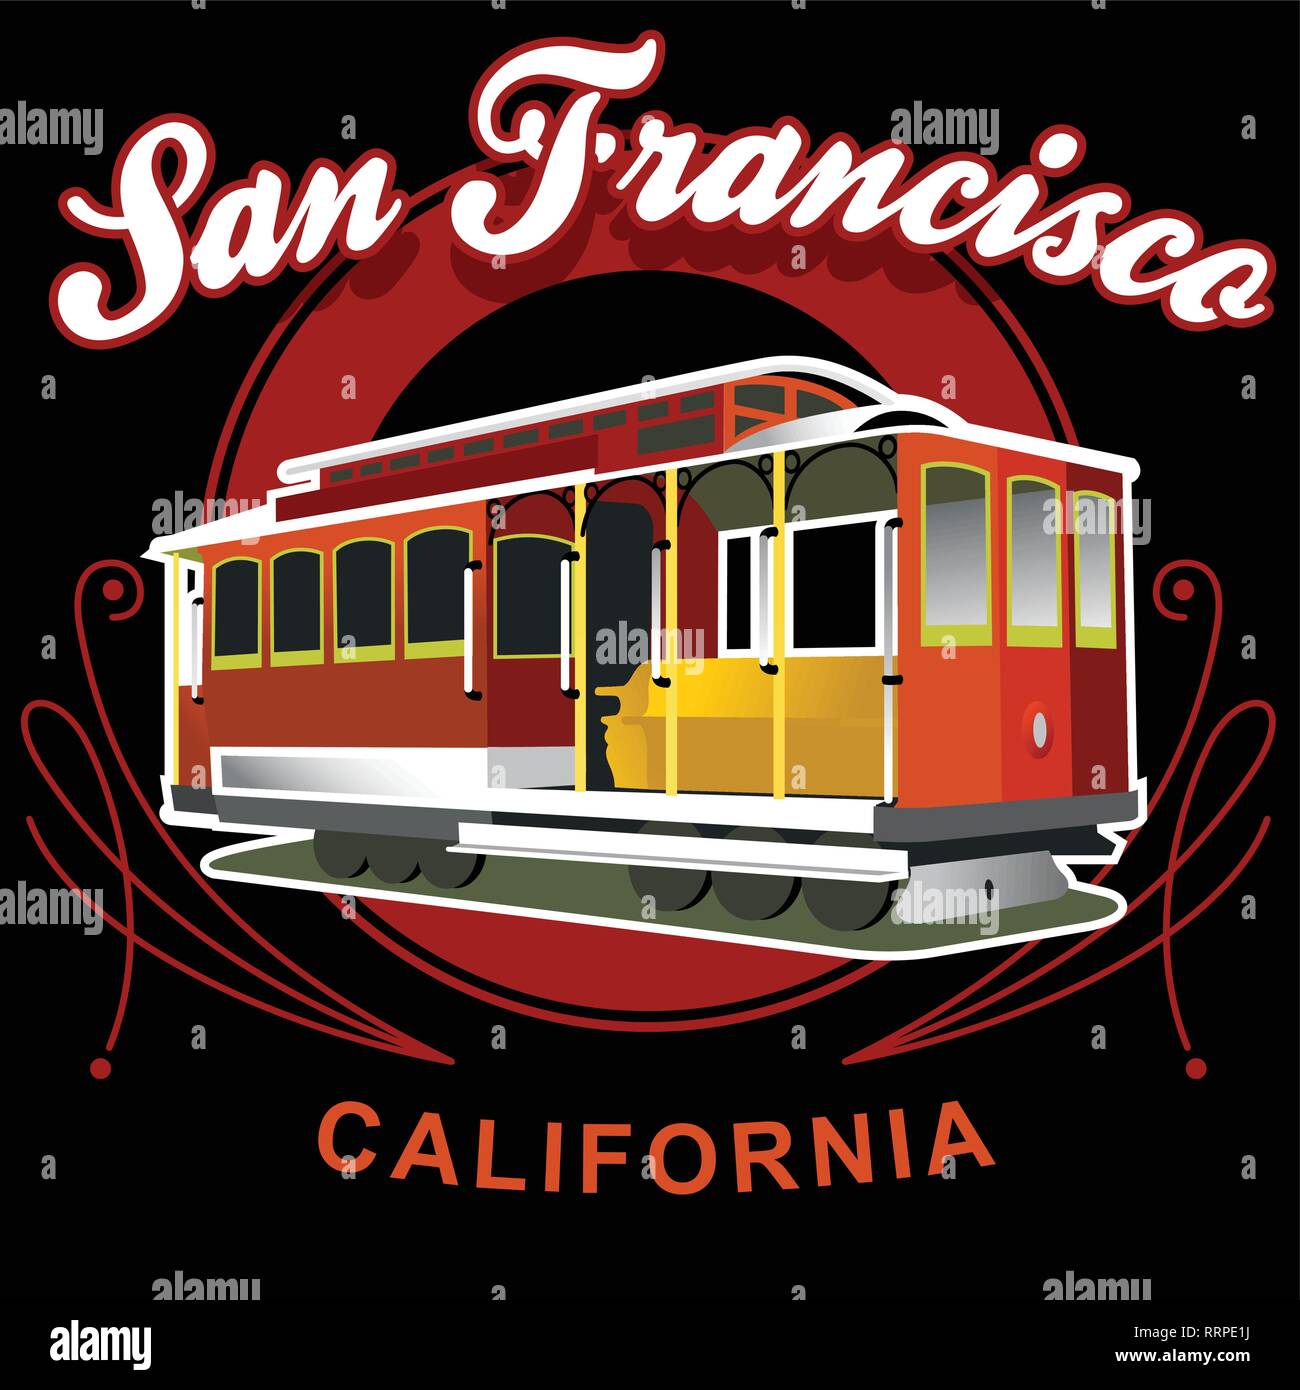 San Francisco trolley Stock Vector